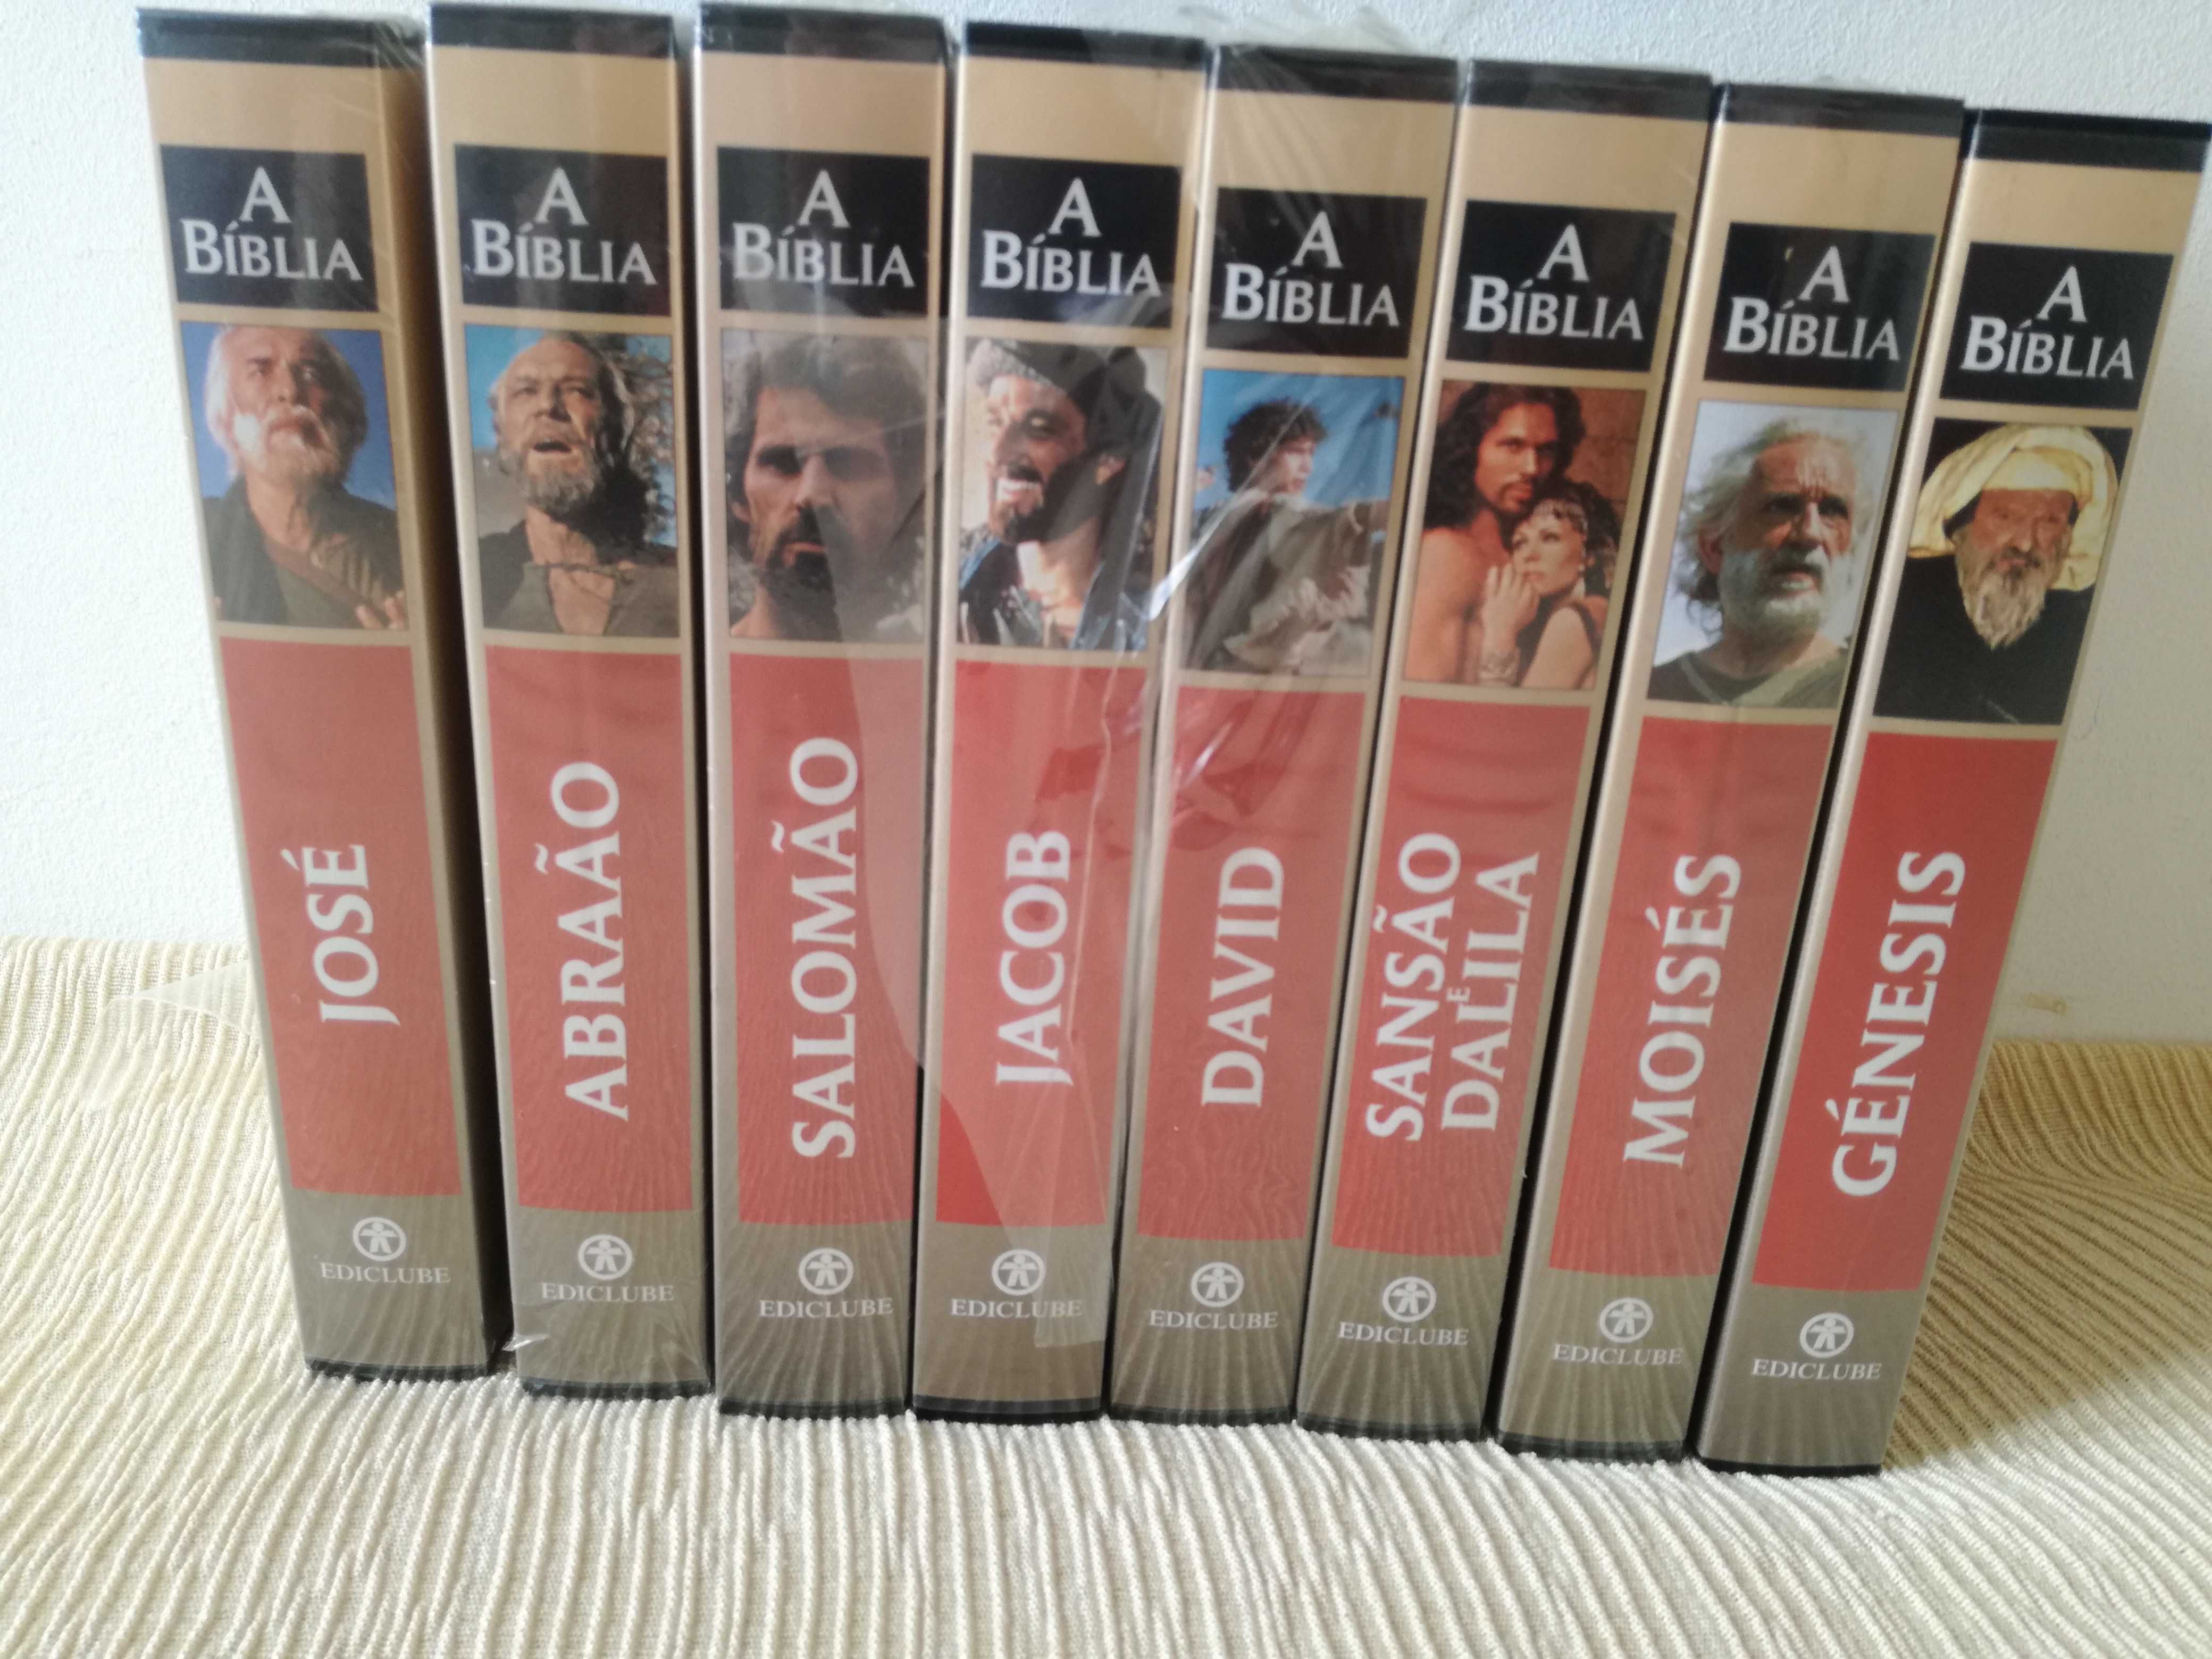 8 Cassetes VHS A Bíblia da Ediclube.
Seis delas estão ainda seladas.